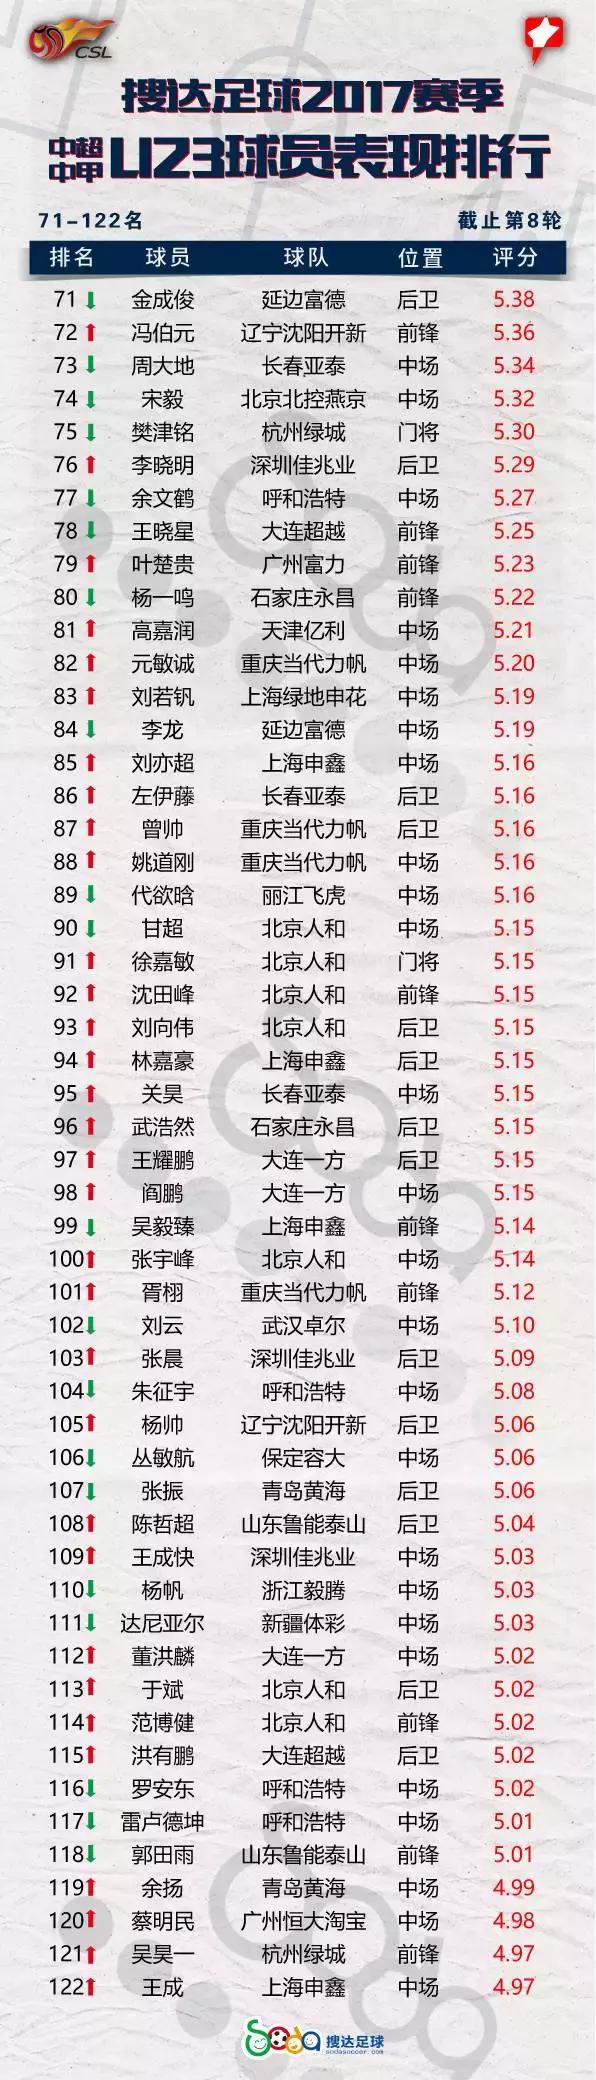 刘若钒中超进球数 中超U23球员进球数达到6个(4)